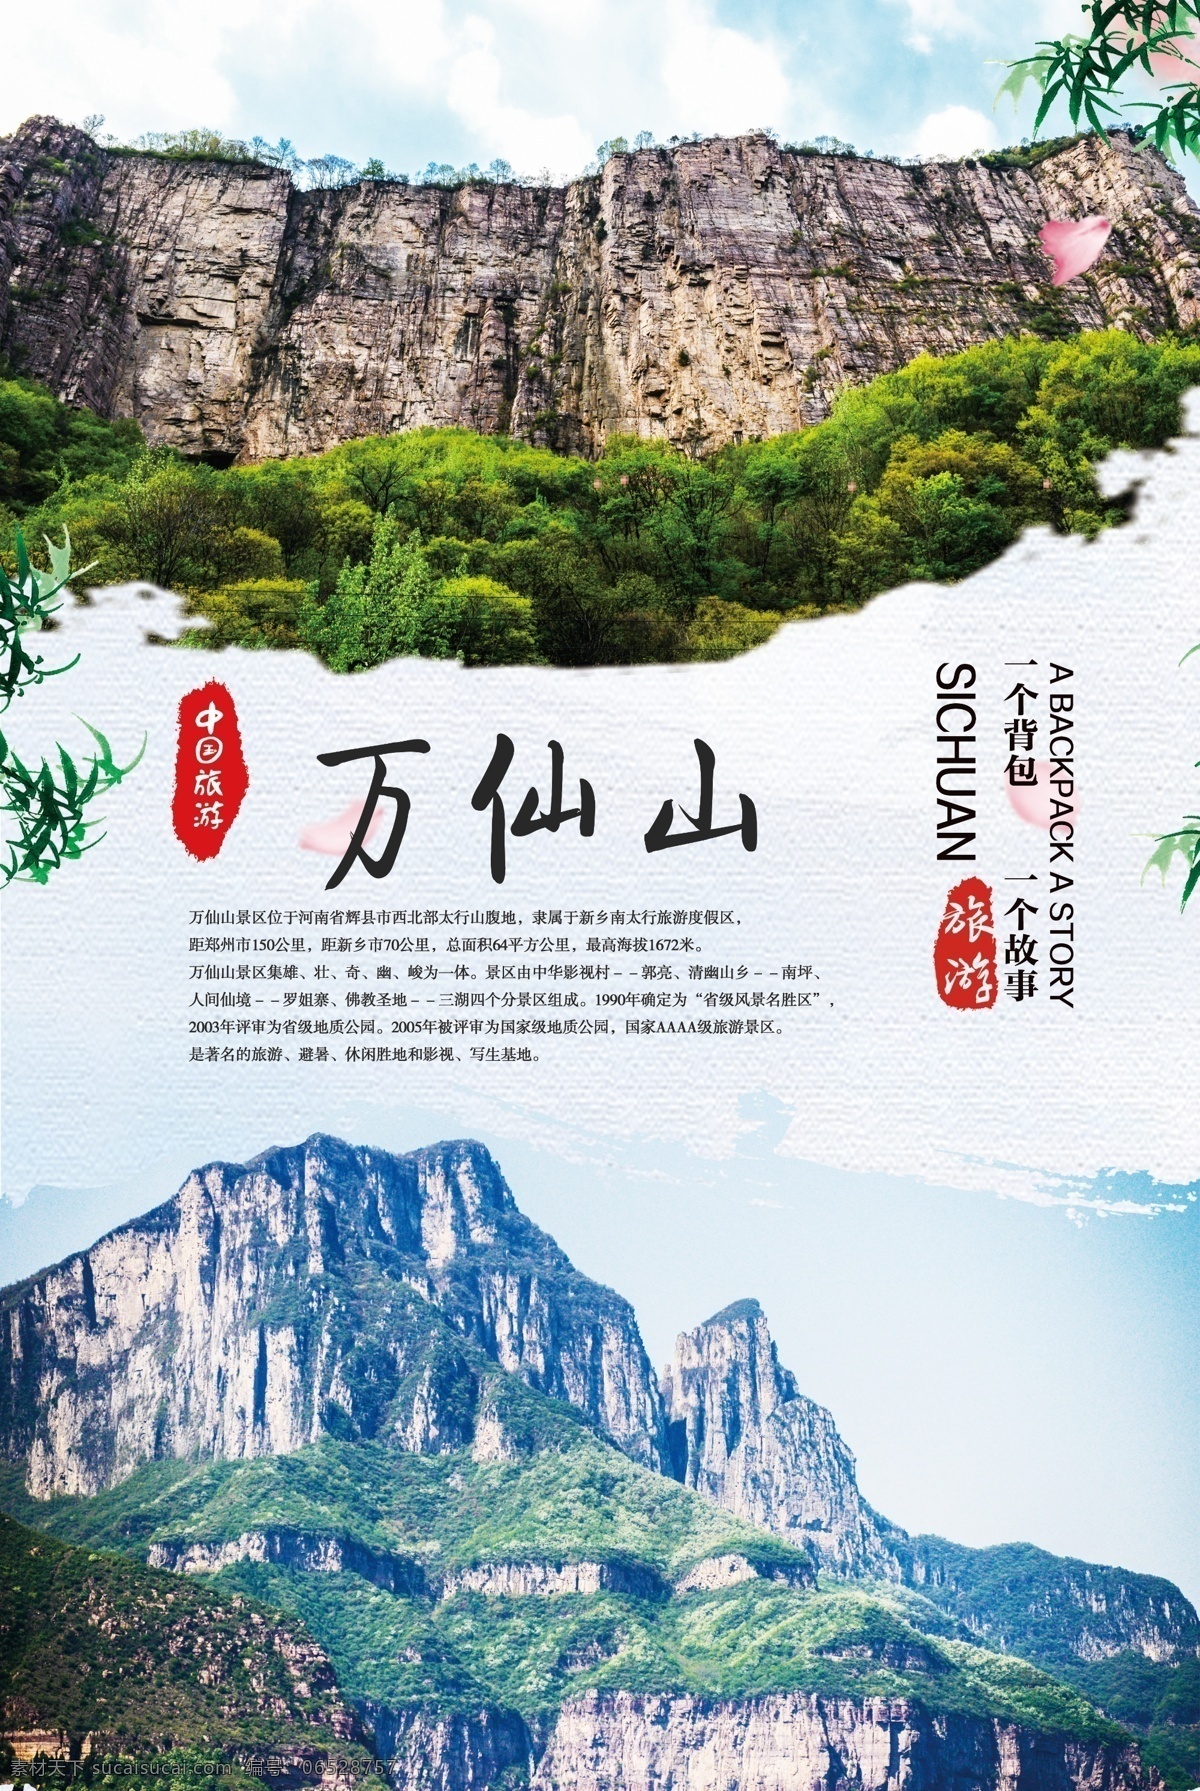 万 仙山 旅游 海报 万仙山 山水旅游 中国旅游 景点 风景